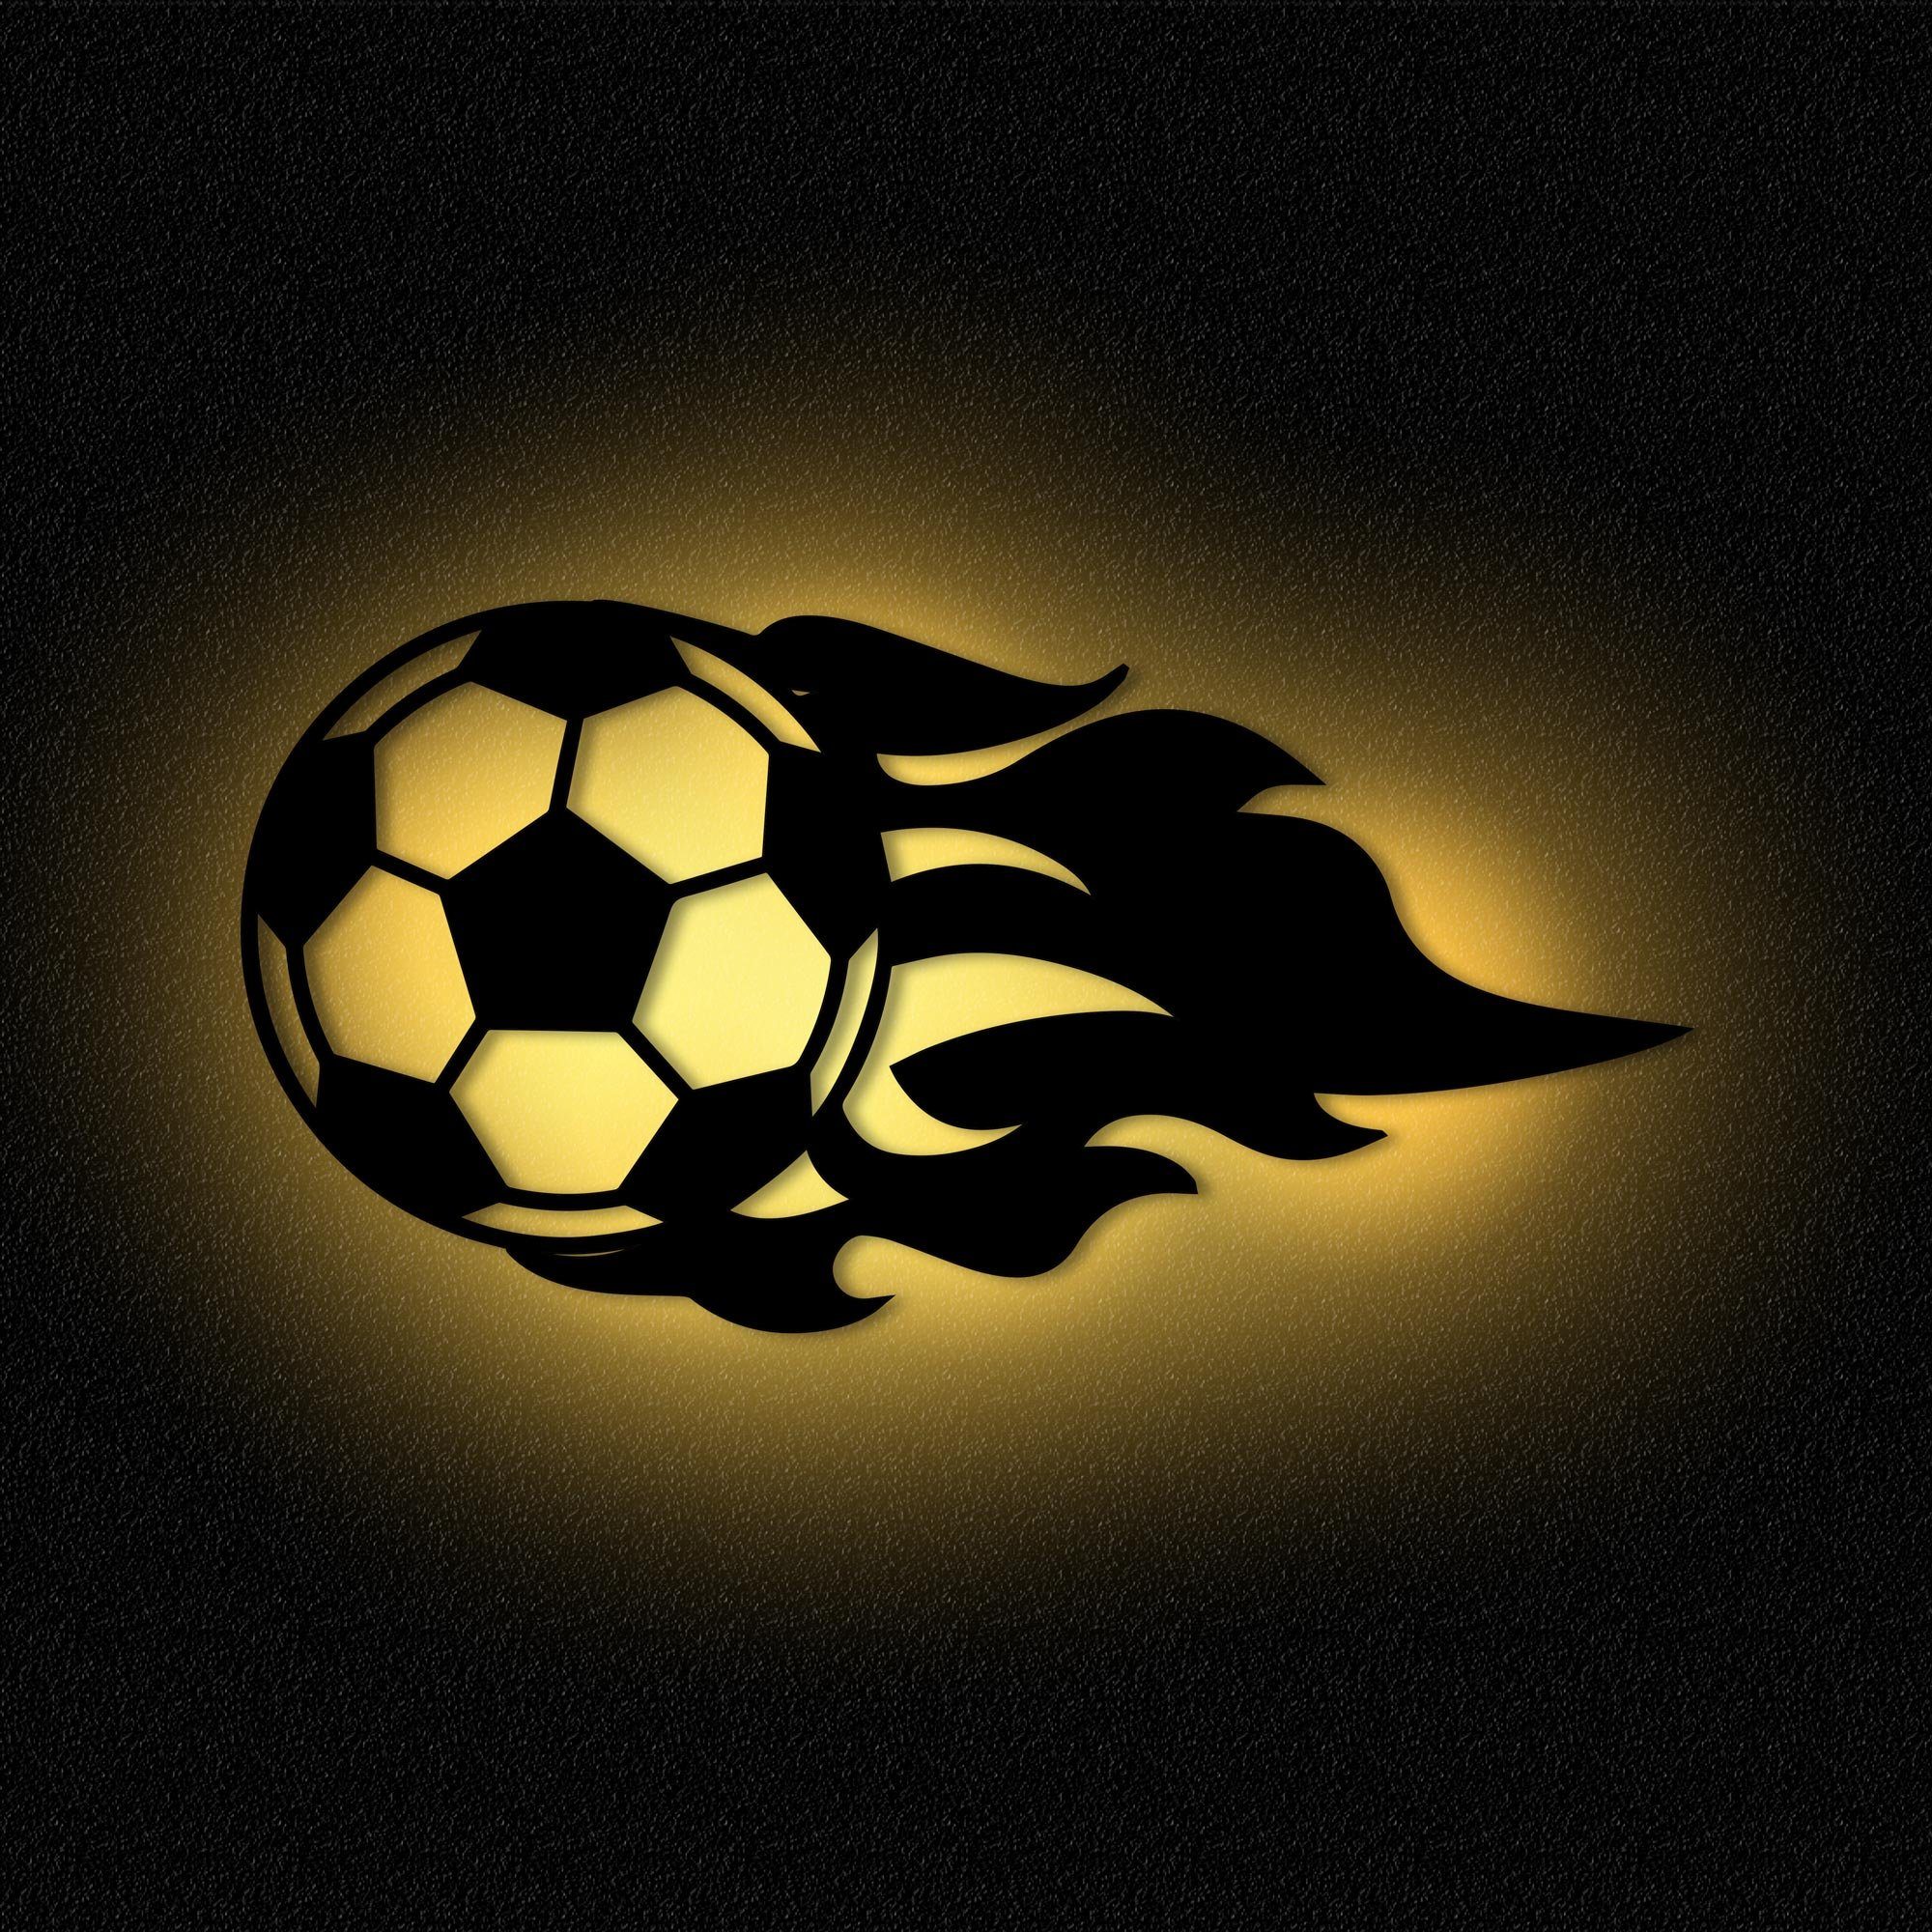 Namofactur LED Nachtlicht Fußball Kinderzimmer Nachtlicht Kinder Wandlampe I MDF Holz, LED fest integriert, Warmweiß